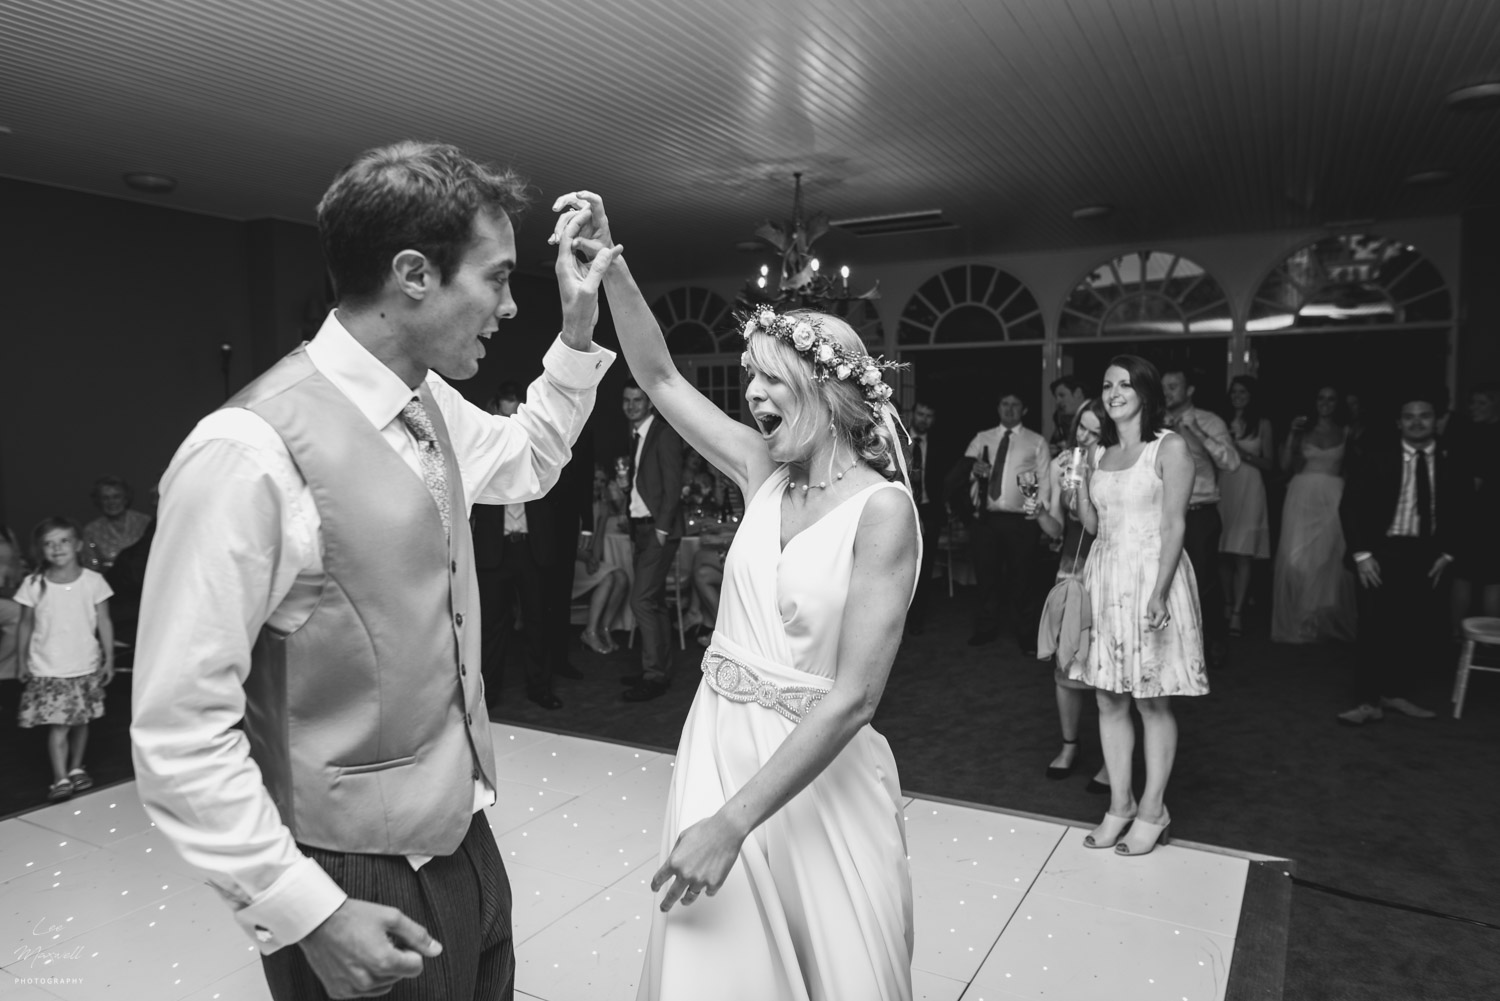 Wedding photographer bridwell first dance